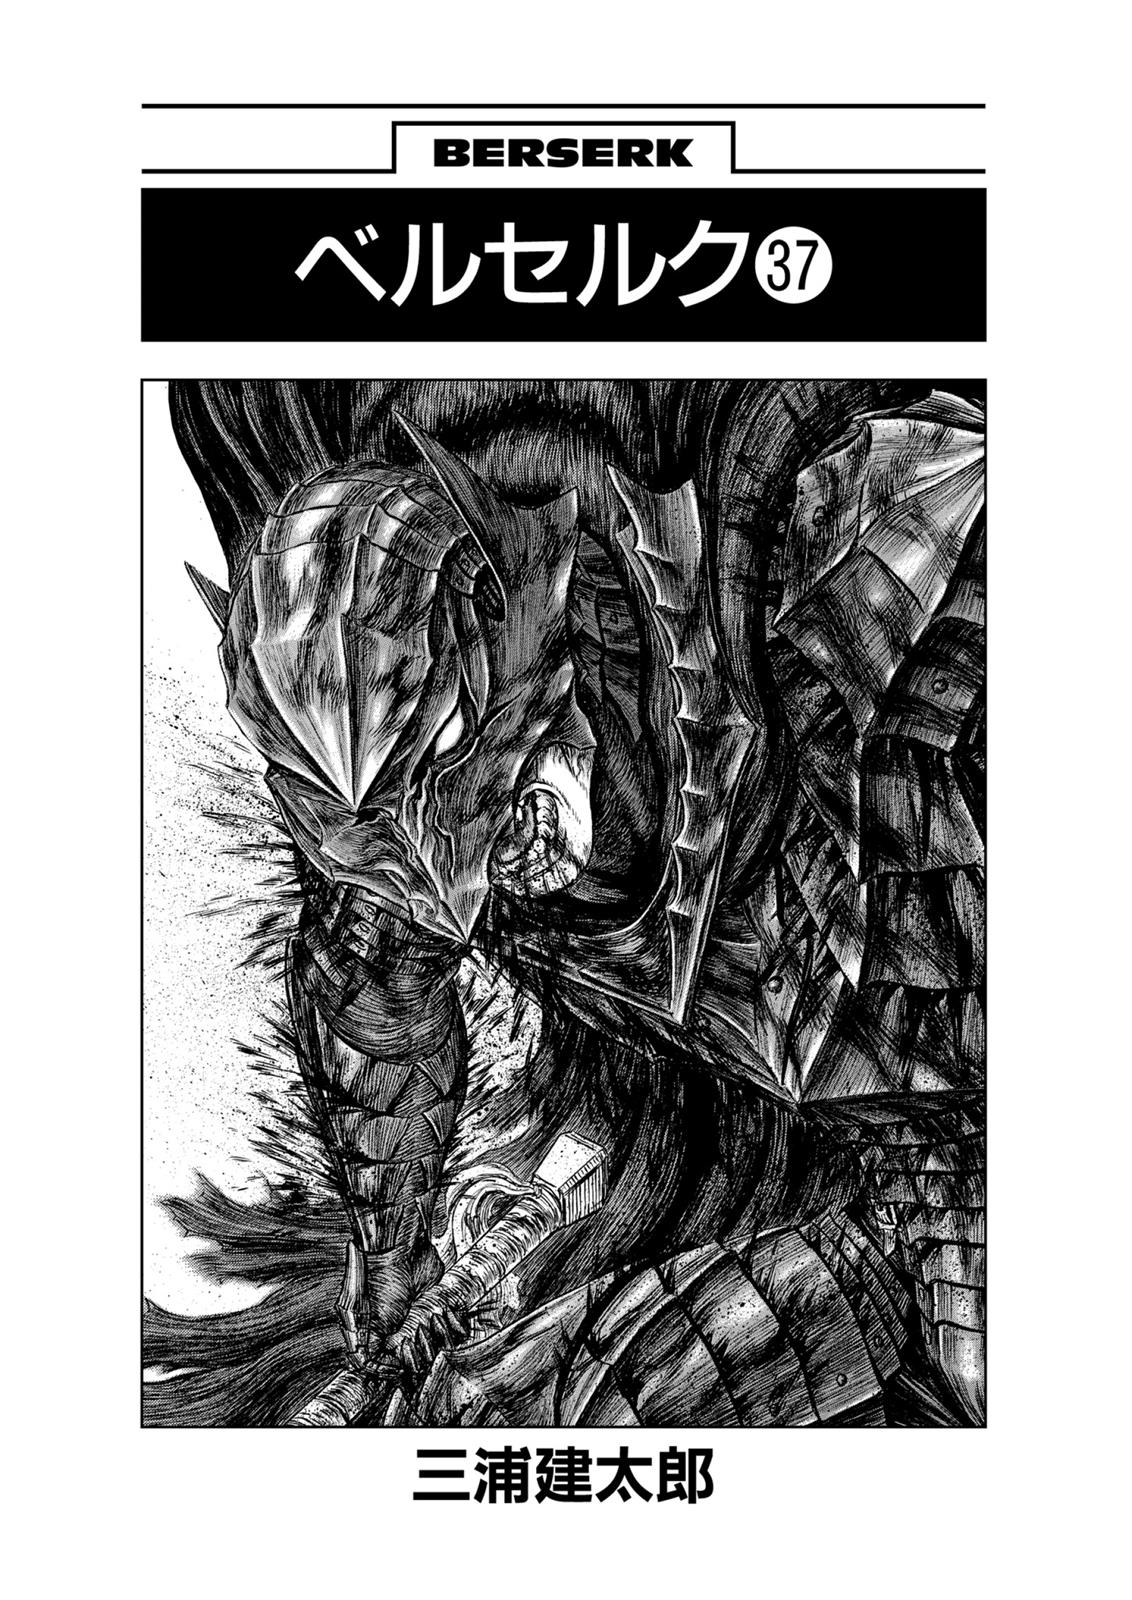 Berserk Manga Chapter 325 image 07